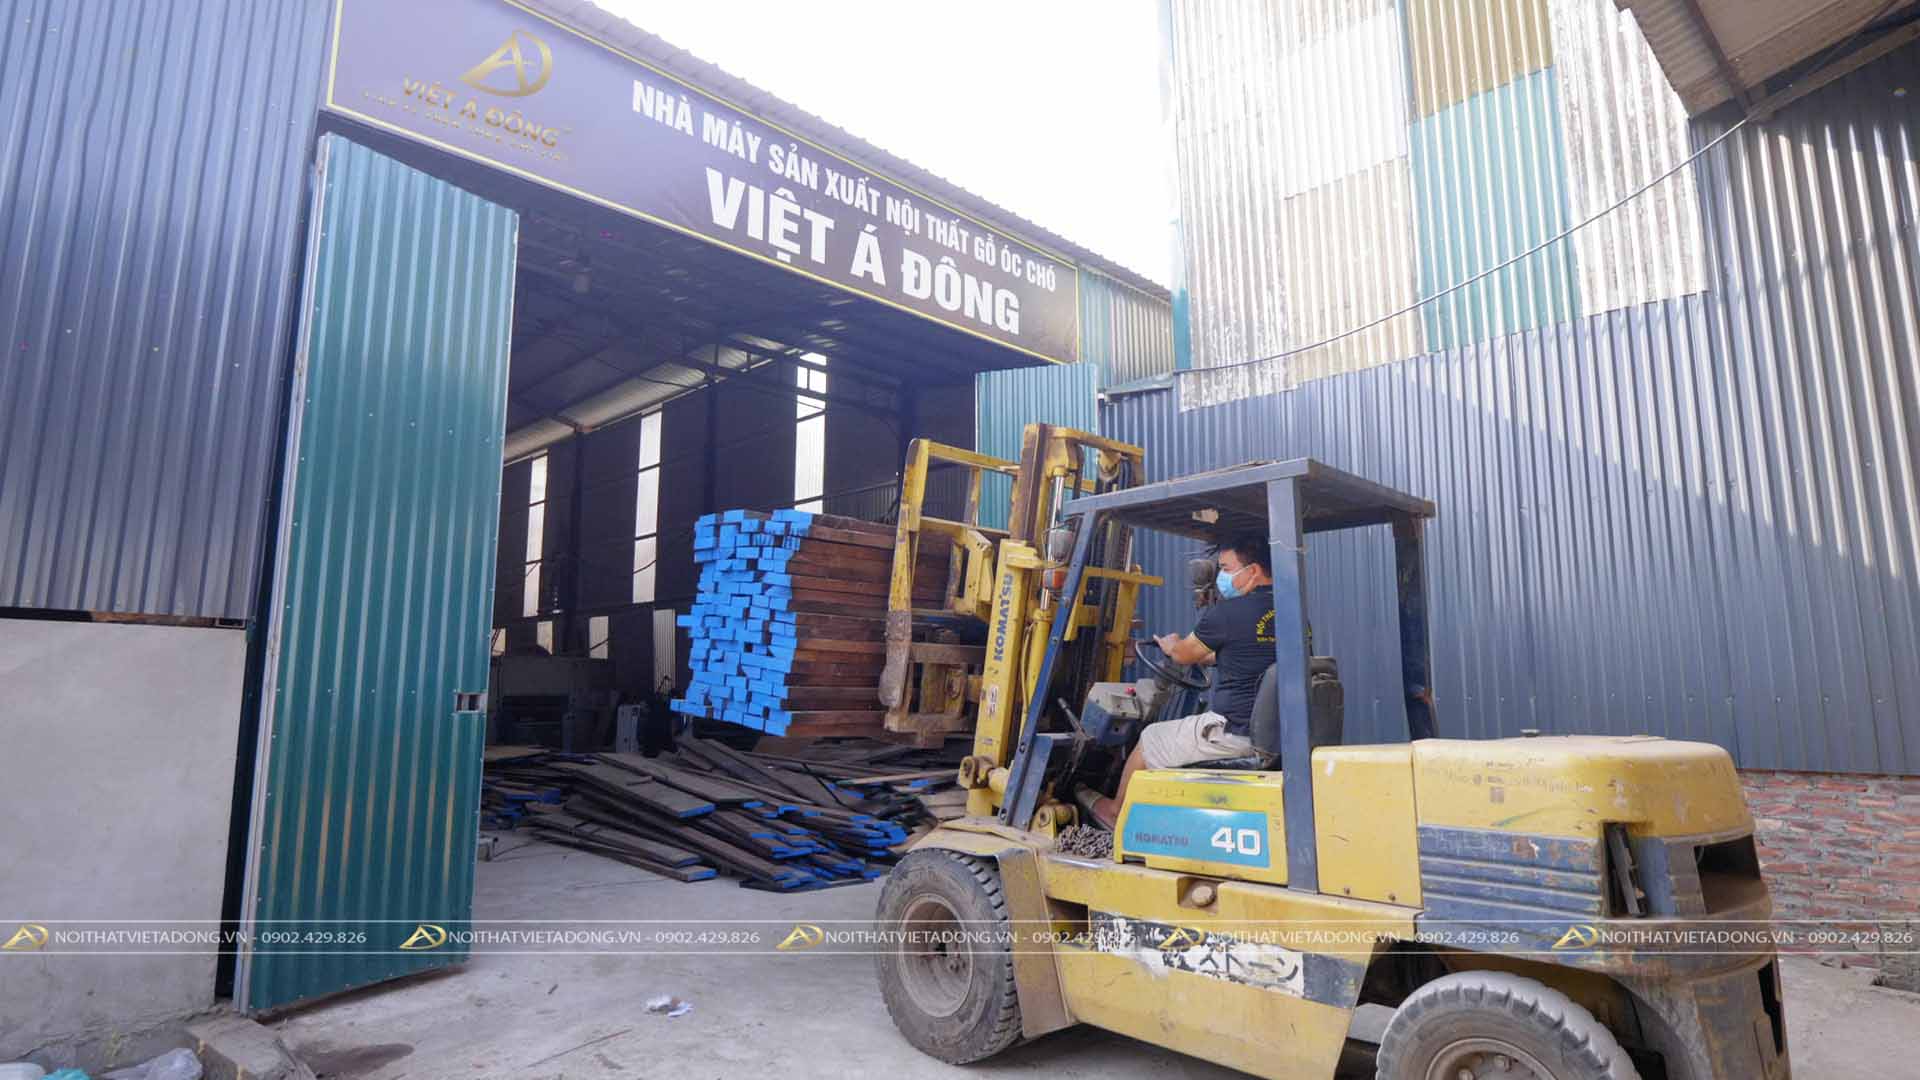 Xưởng sản xuất nội thất Việt Á Đông